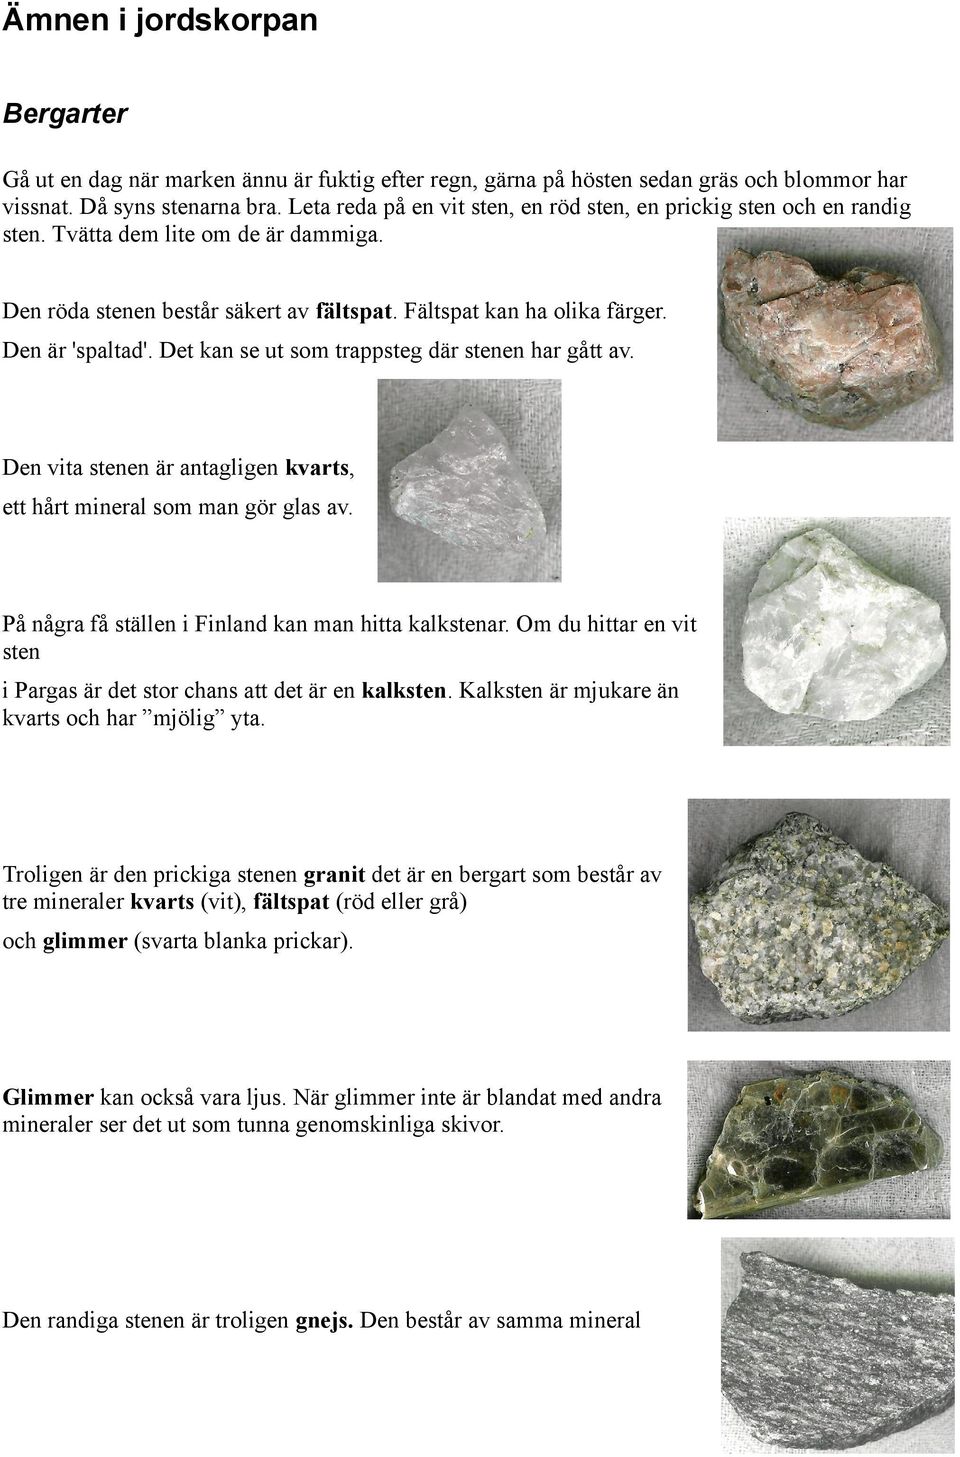 Det kan se ut som trappsteg där stenen har gått av. Den vita stenen är antagligen kvarts, ett hårt mineral som man gör glas av. På några få ställen i Finland kan man hitta kalkstenar.